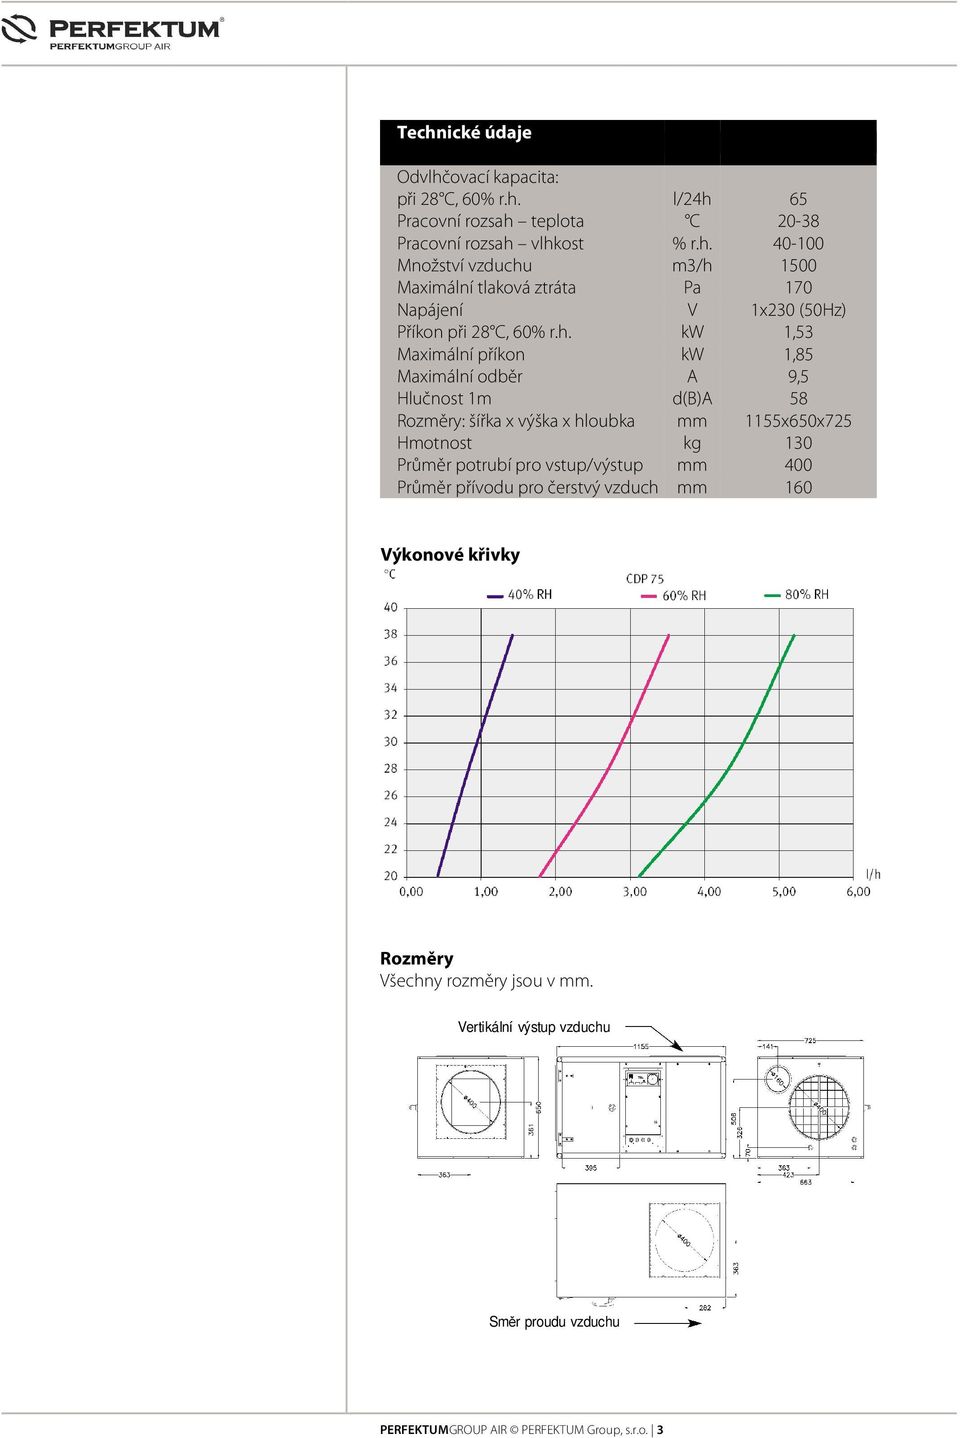 potrubí pro vstup/výstup mm 400 Průměr přívodu pro čerstvý vzduch mm 160 Výkonové křivky Rozměry Všechny rozměry jsou v mm.